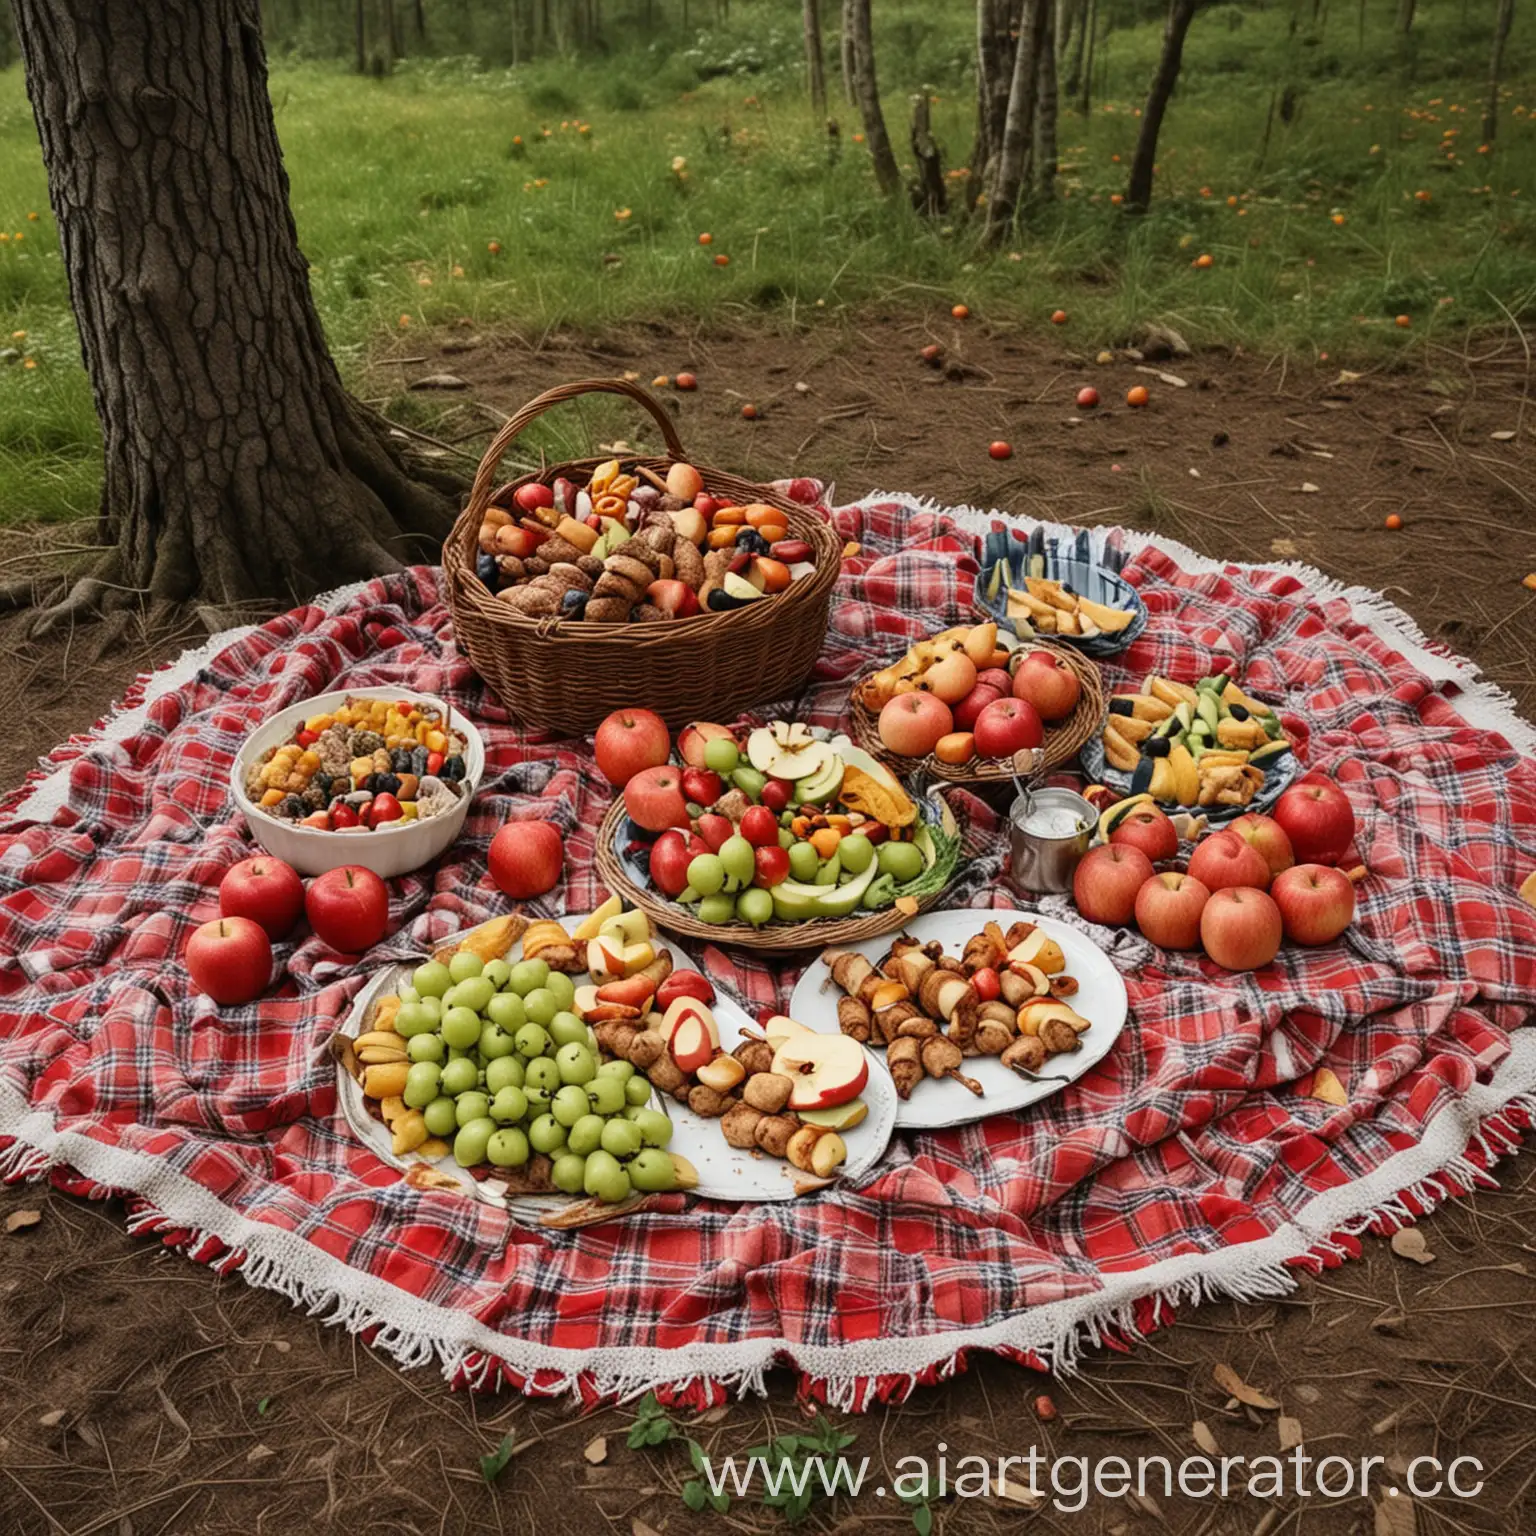 Сгенерируй изображение пикника в лесу. На земле должен располагаться большой ковер. На нем должны сидеть три человека. На ковре должна стоять тарелка с яблоками, шашлык, миска с фруктами.
